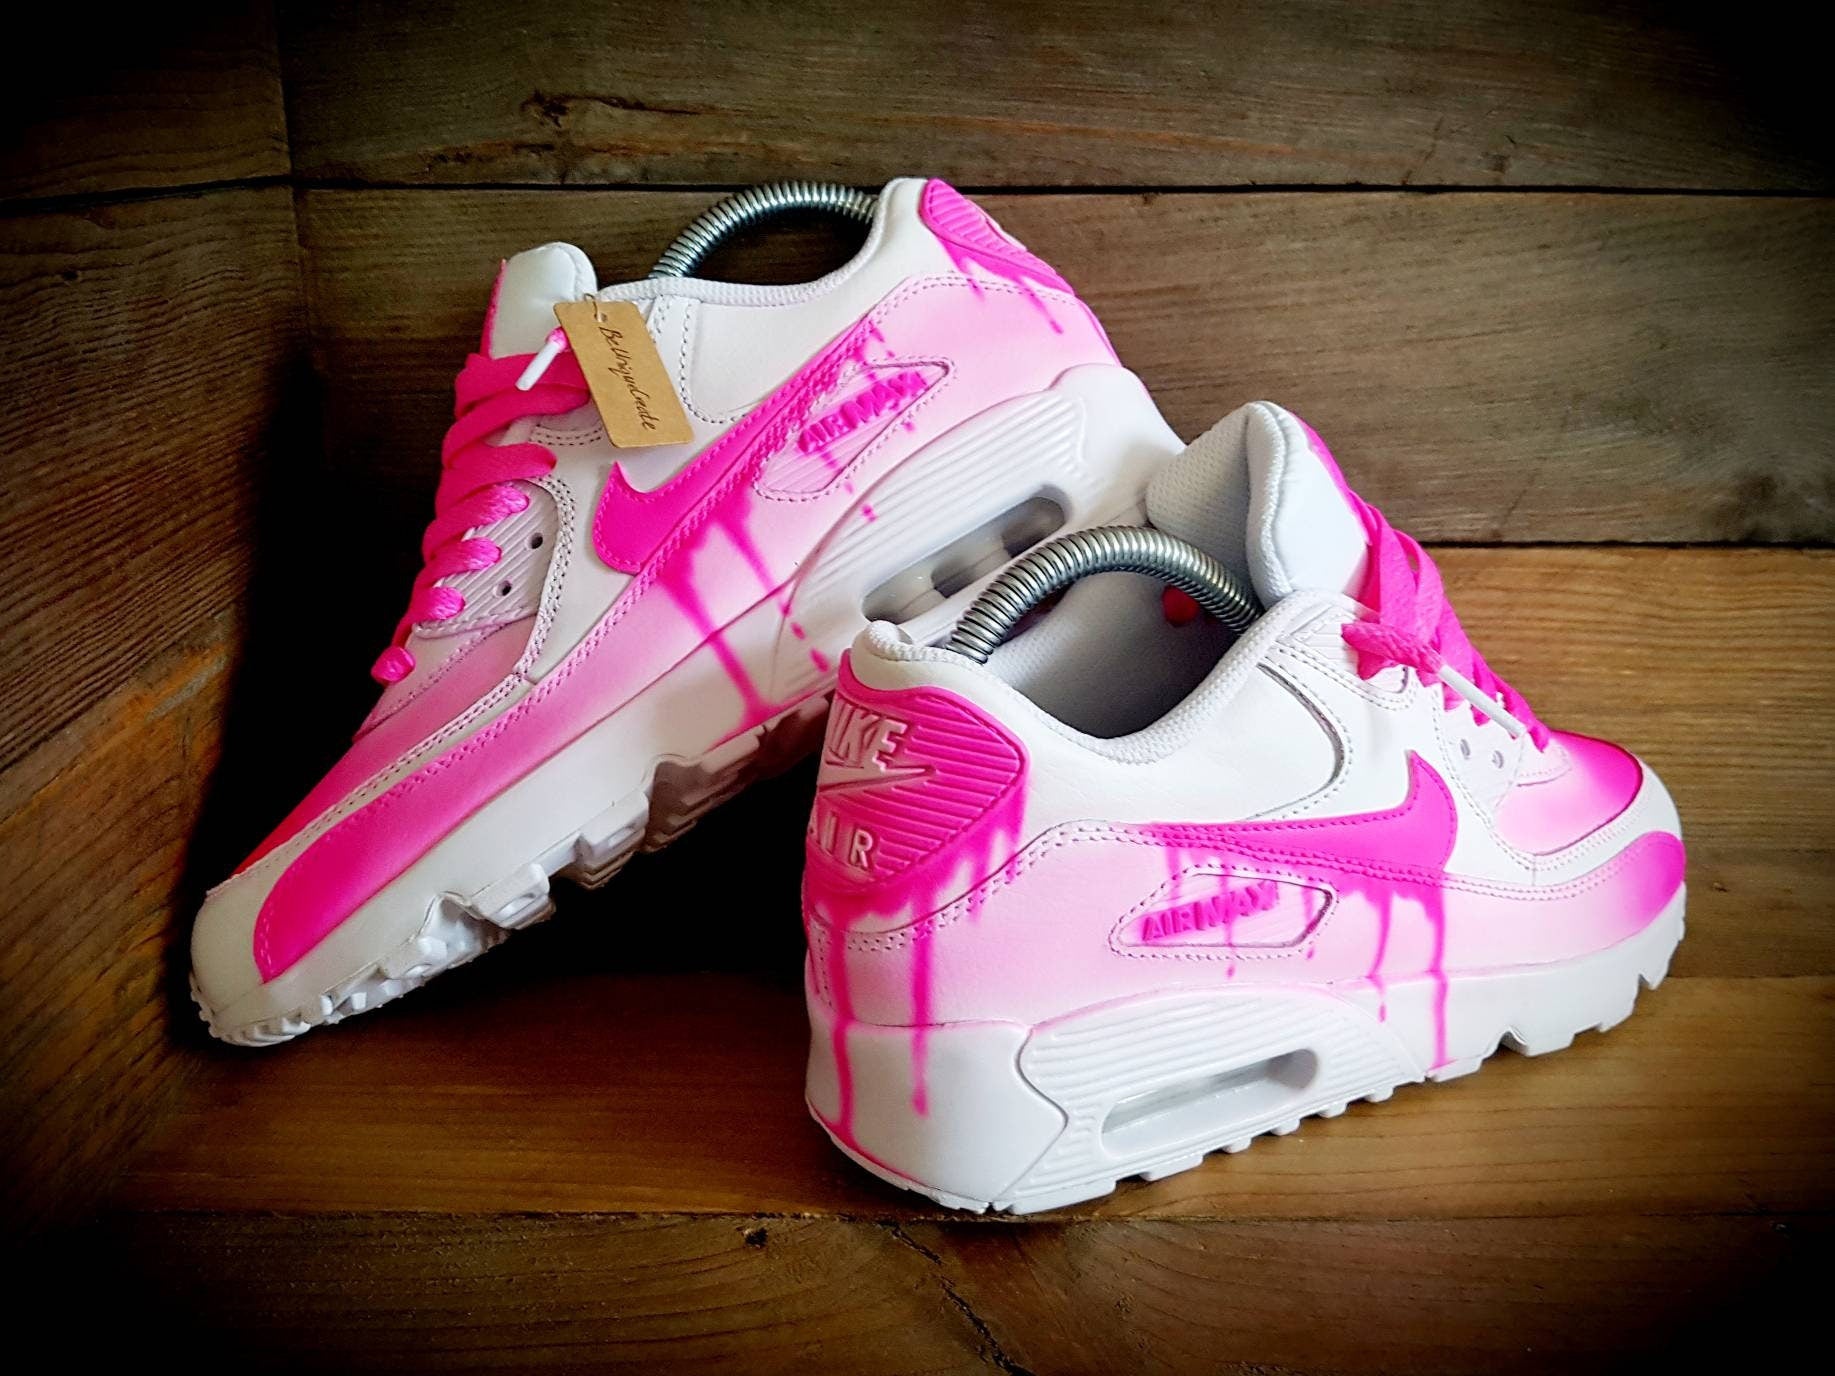 Custom Painted Air Max 90/Sneakers/Shoes/Kicks/Premium/Personalised/Drip Fade-Neon Pink